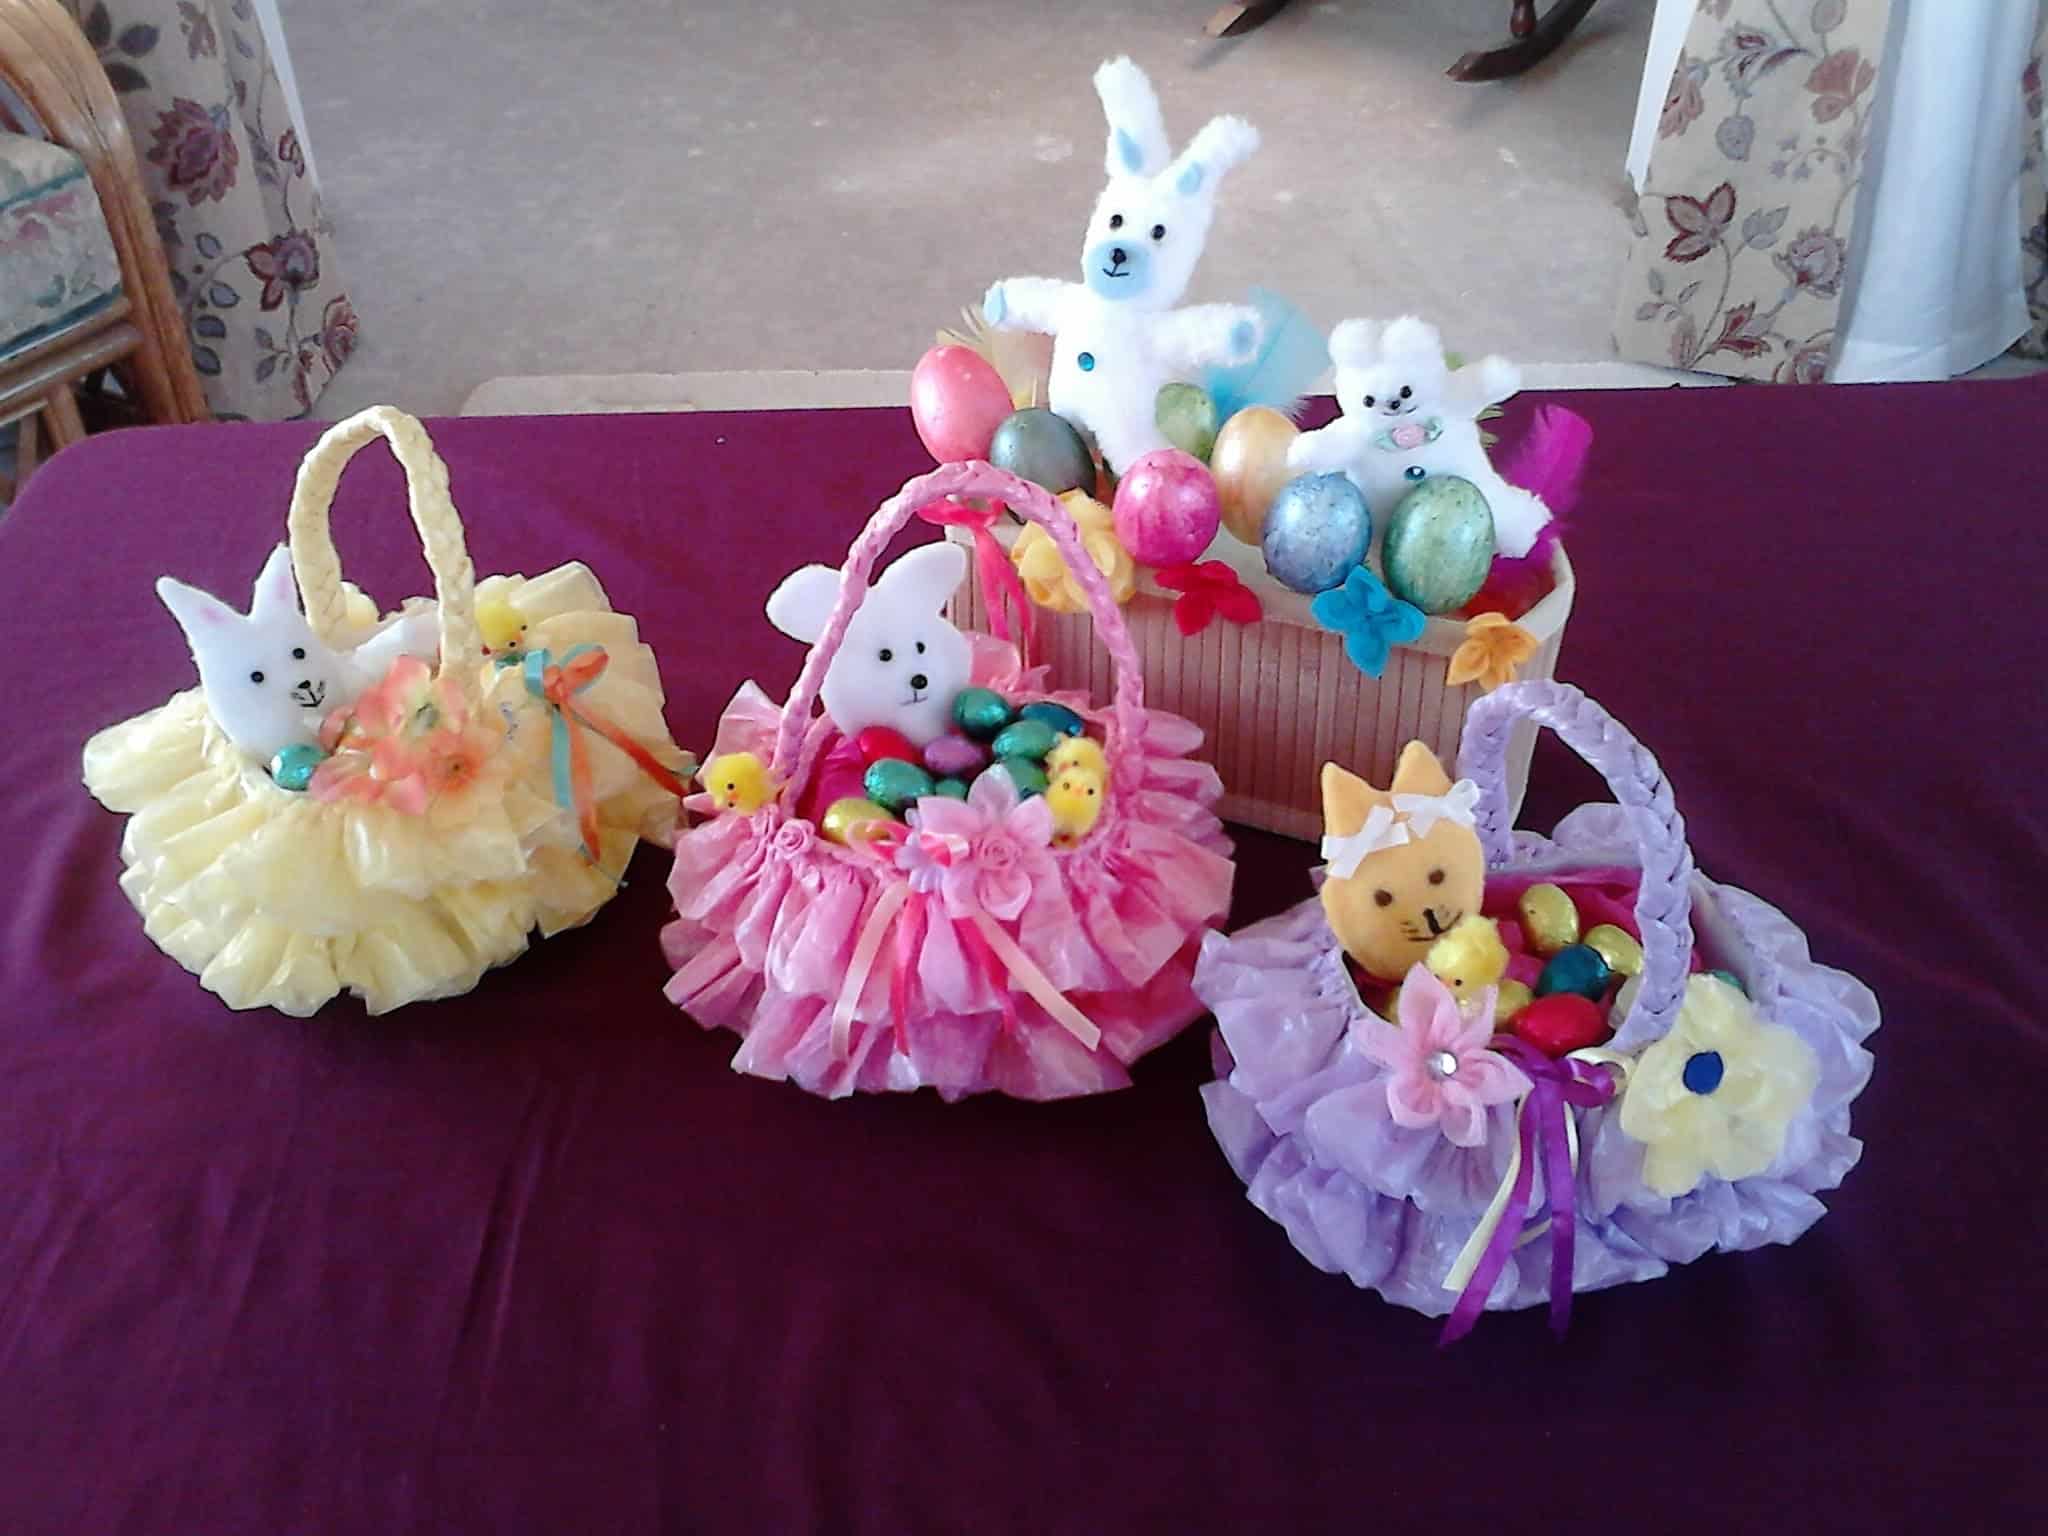 Plastic bag Easter baskets